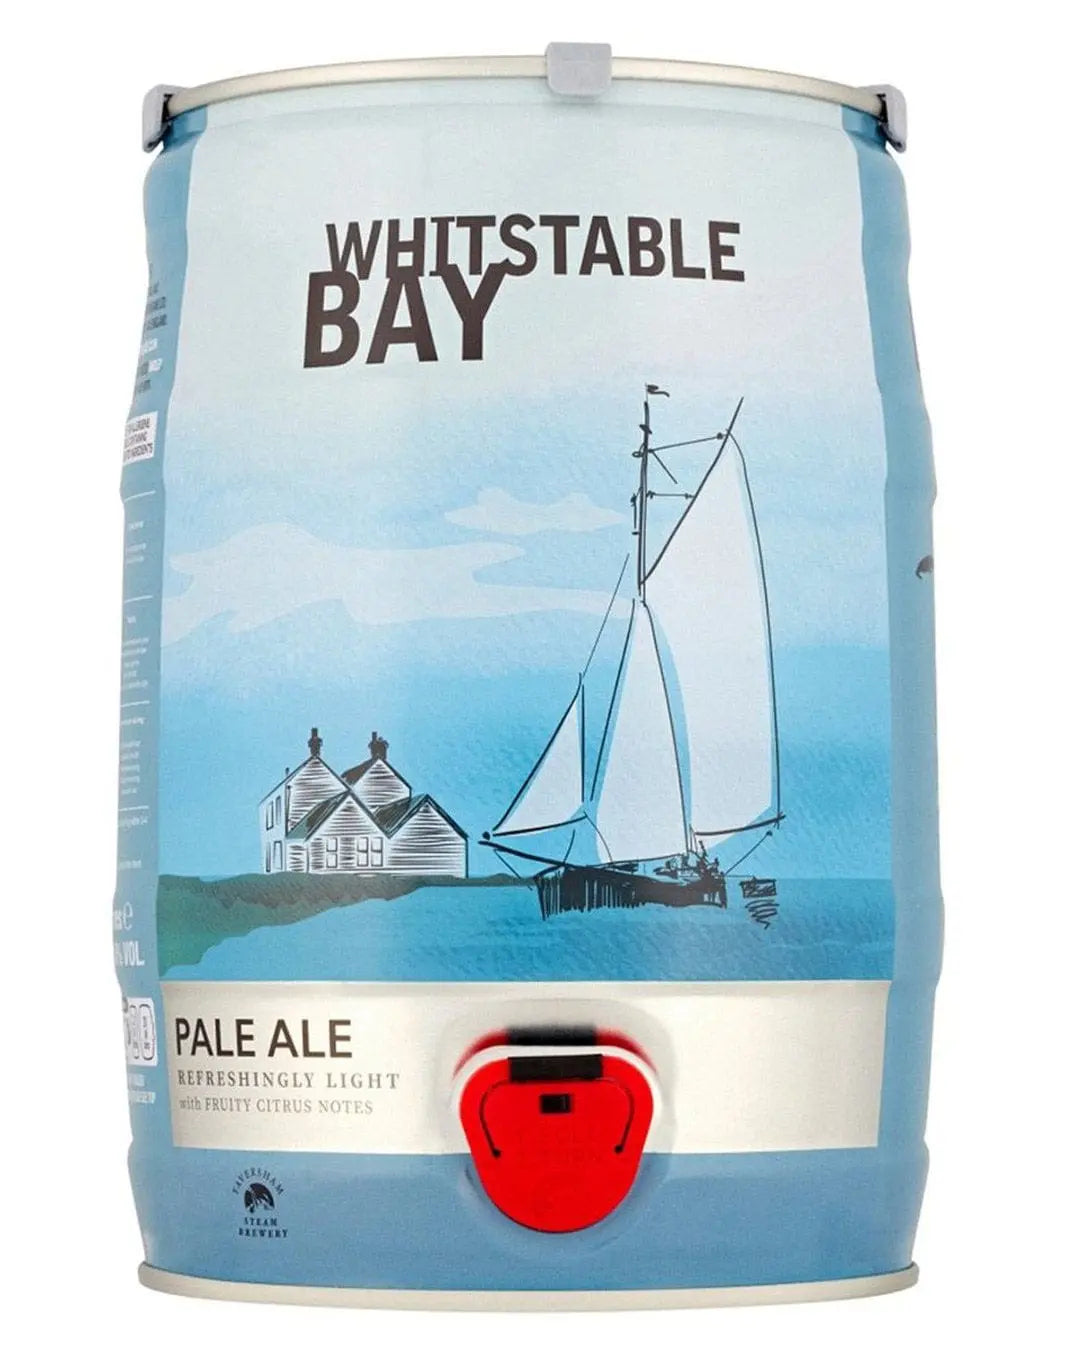 Whitstable Bay Pale Ale Mini Keg, 5 L Beer